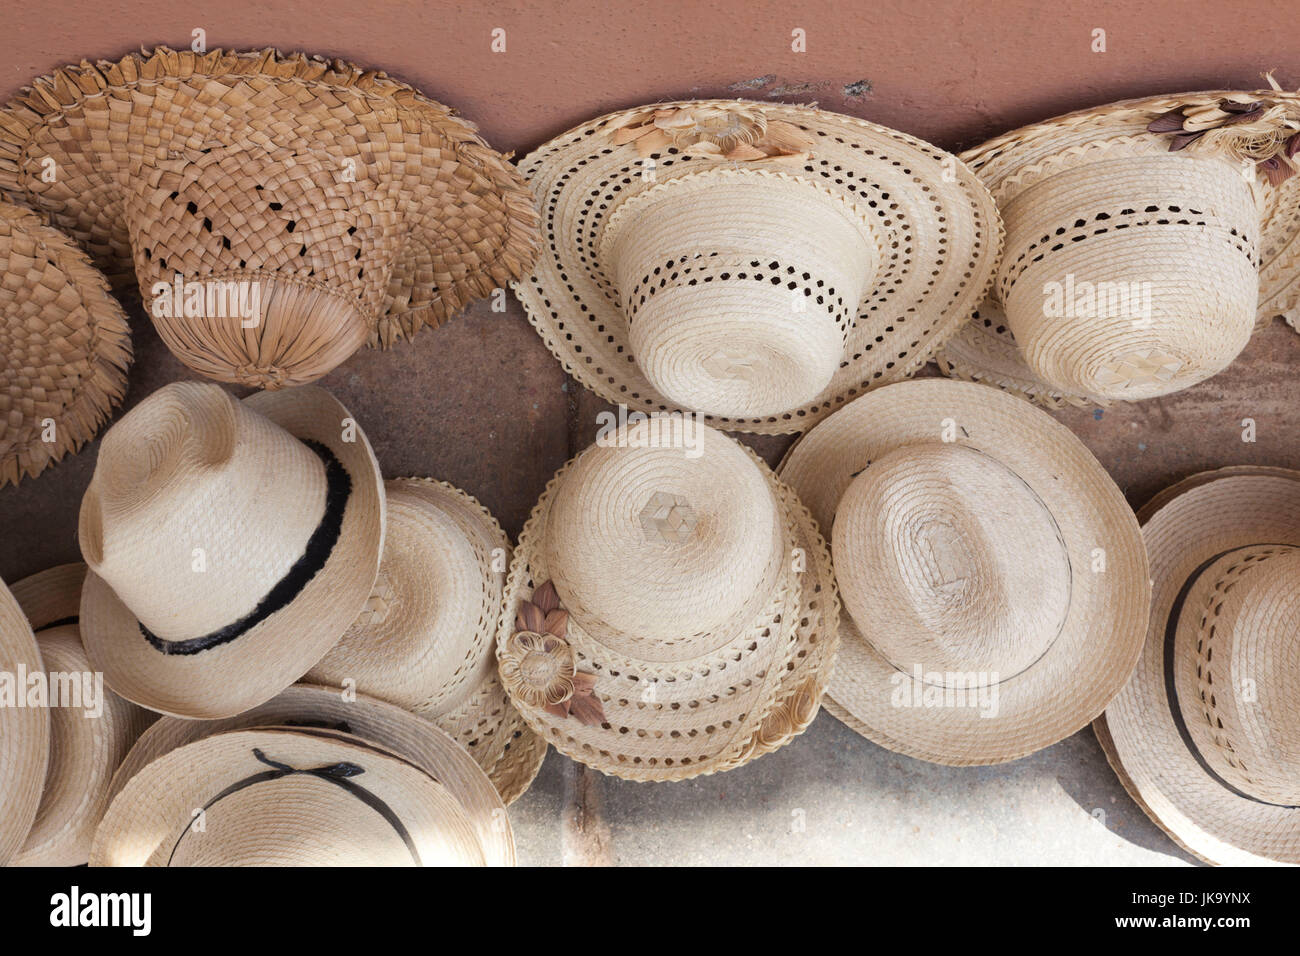 Cappelli cubani immagini e fotografie stock ad alta risoluzione - Alamy